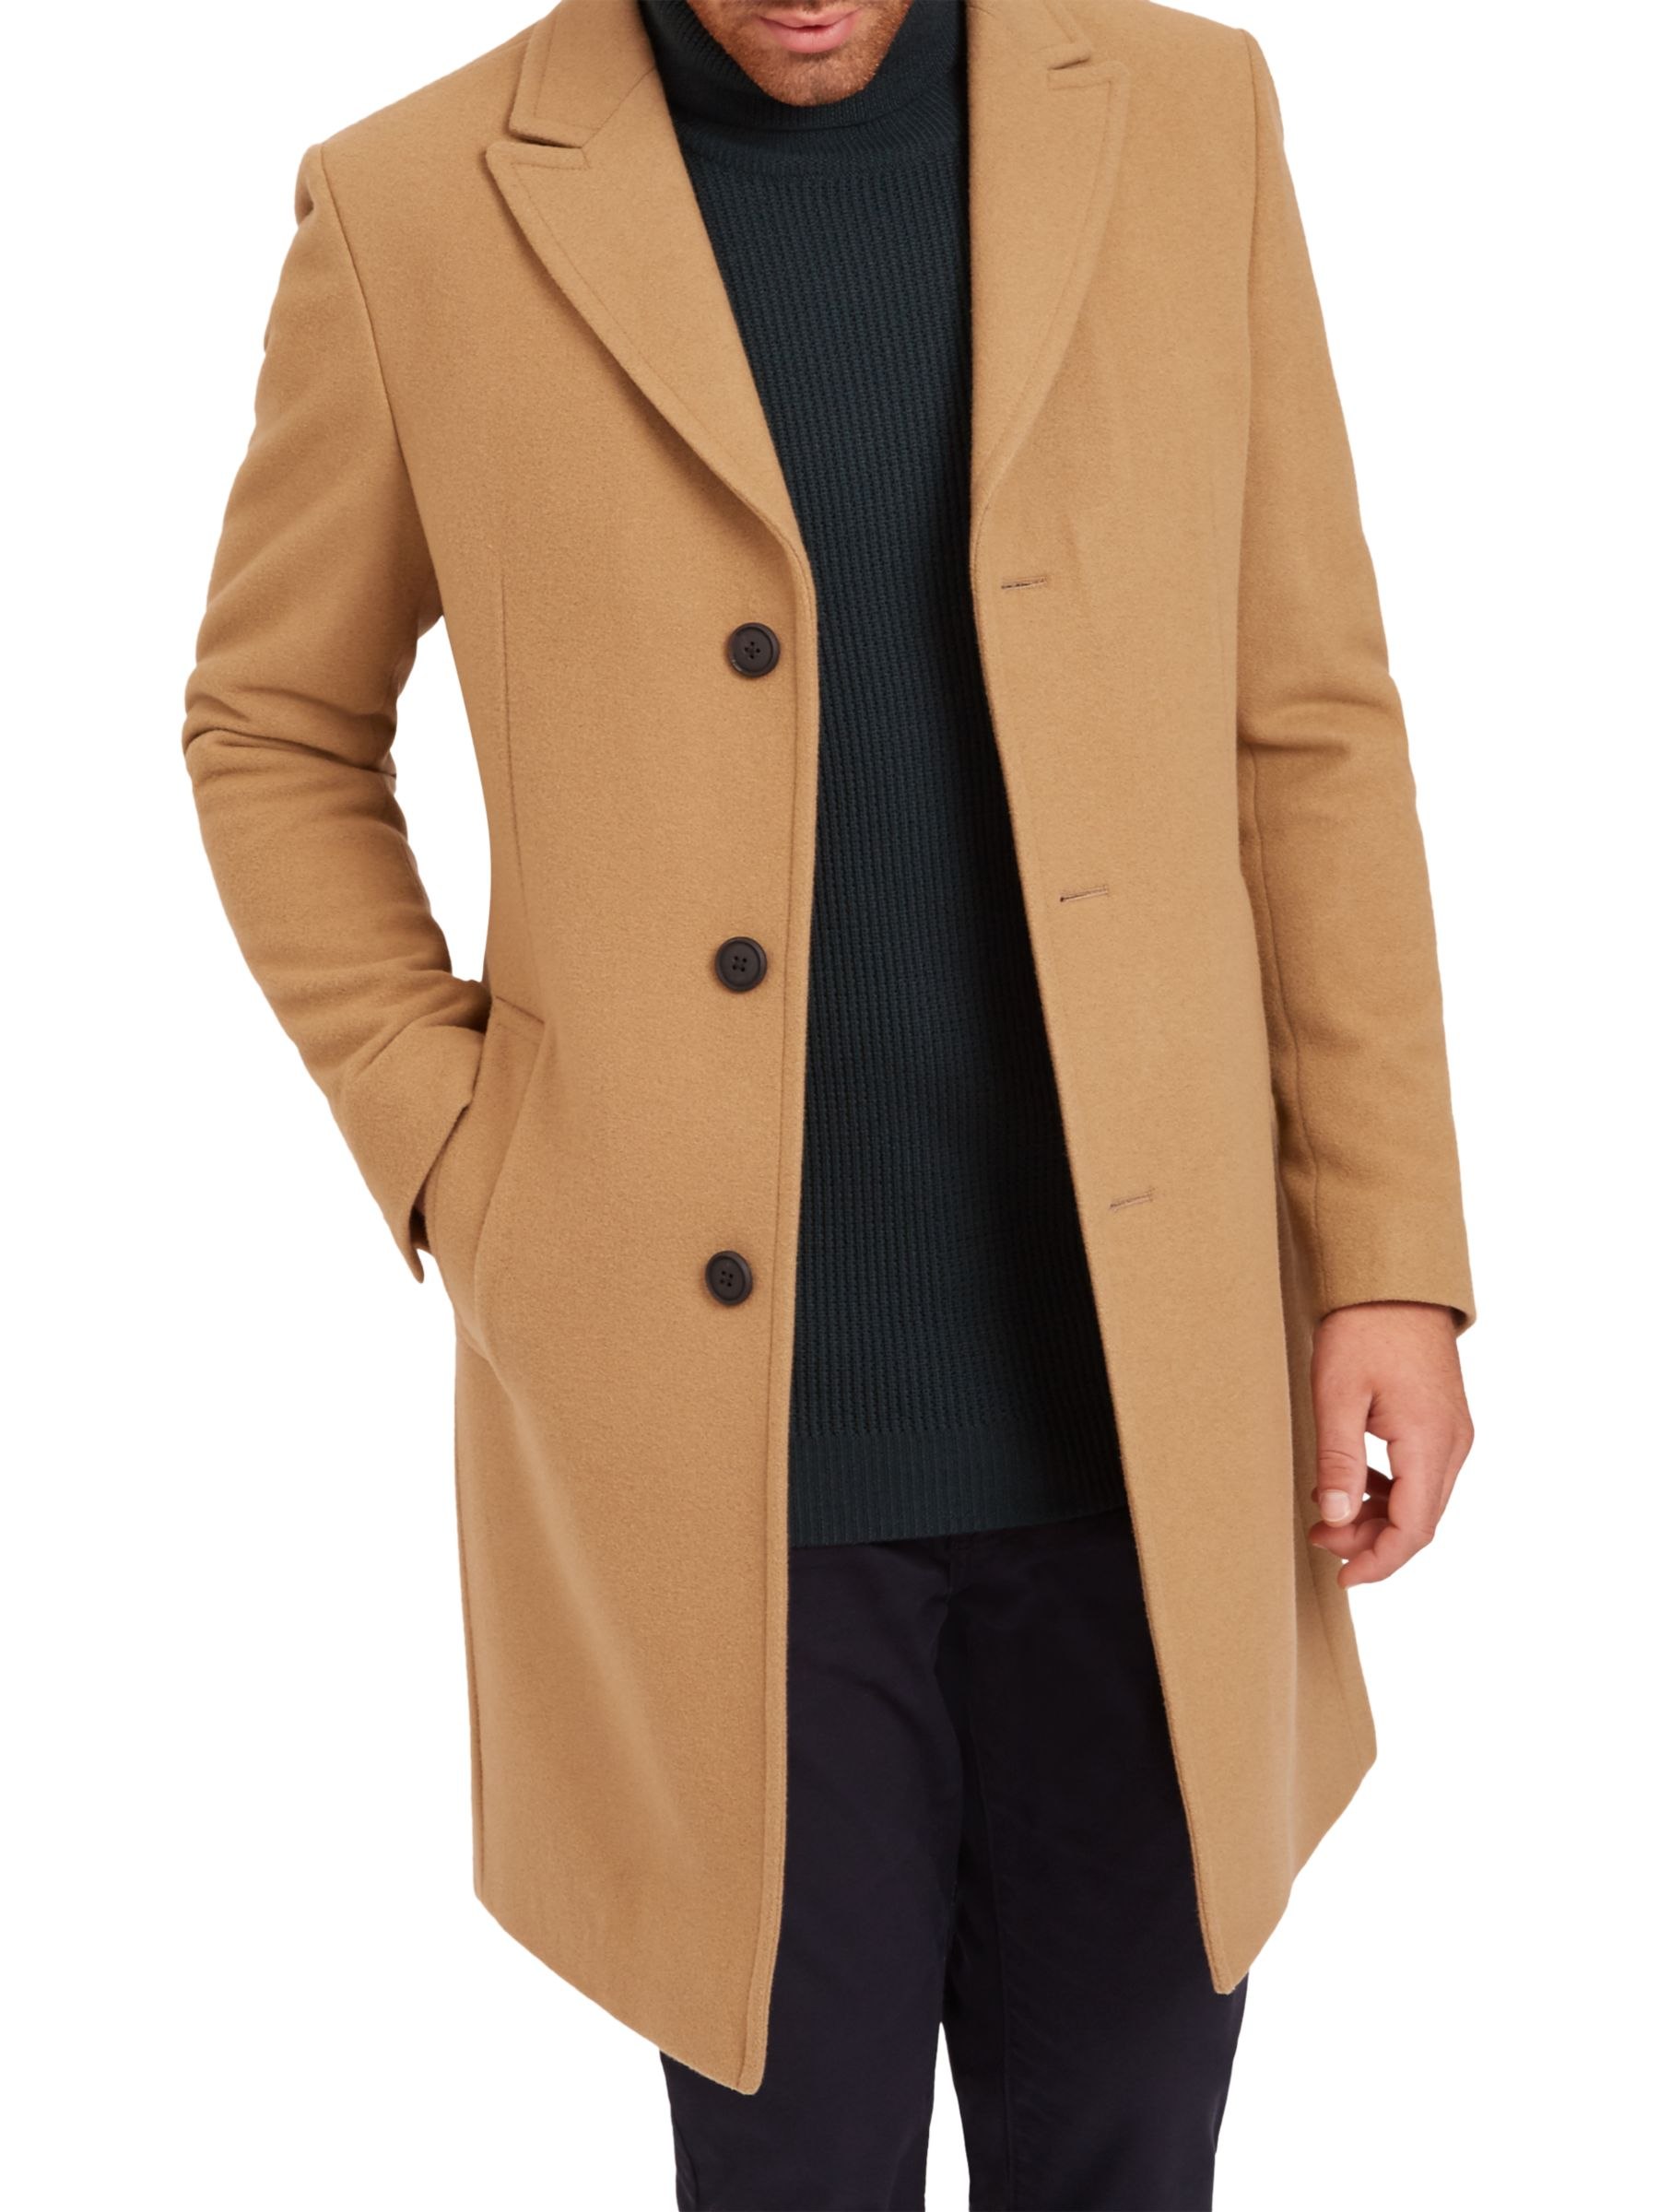 Мужское пальто омск. Боттега пальто мужское кашемировое пальто. Пальто кэмэл мужское длинное. Пальто Честерфилд мужское.